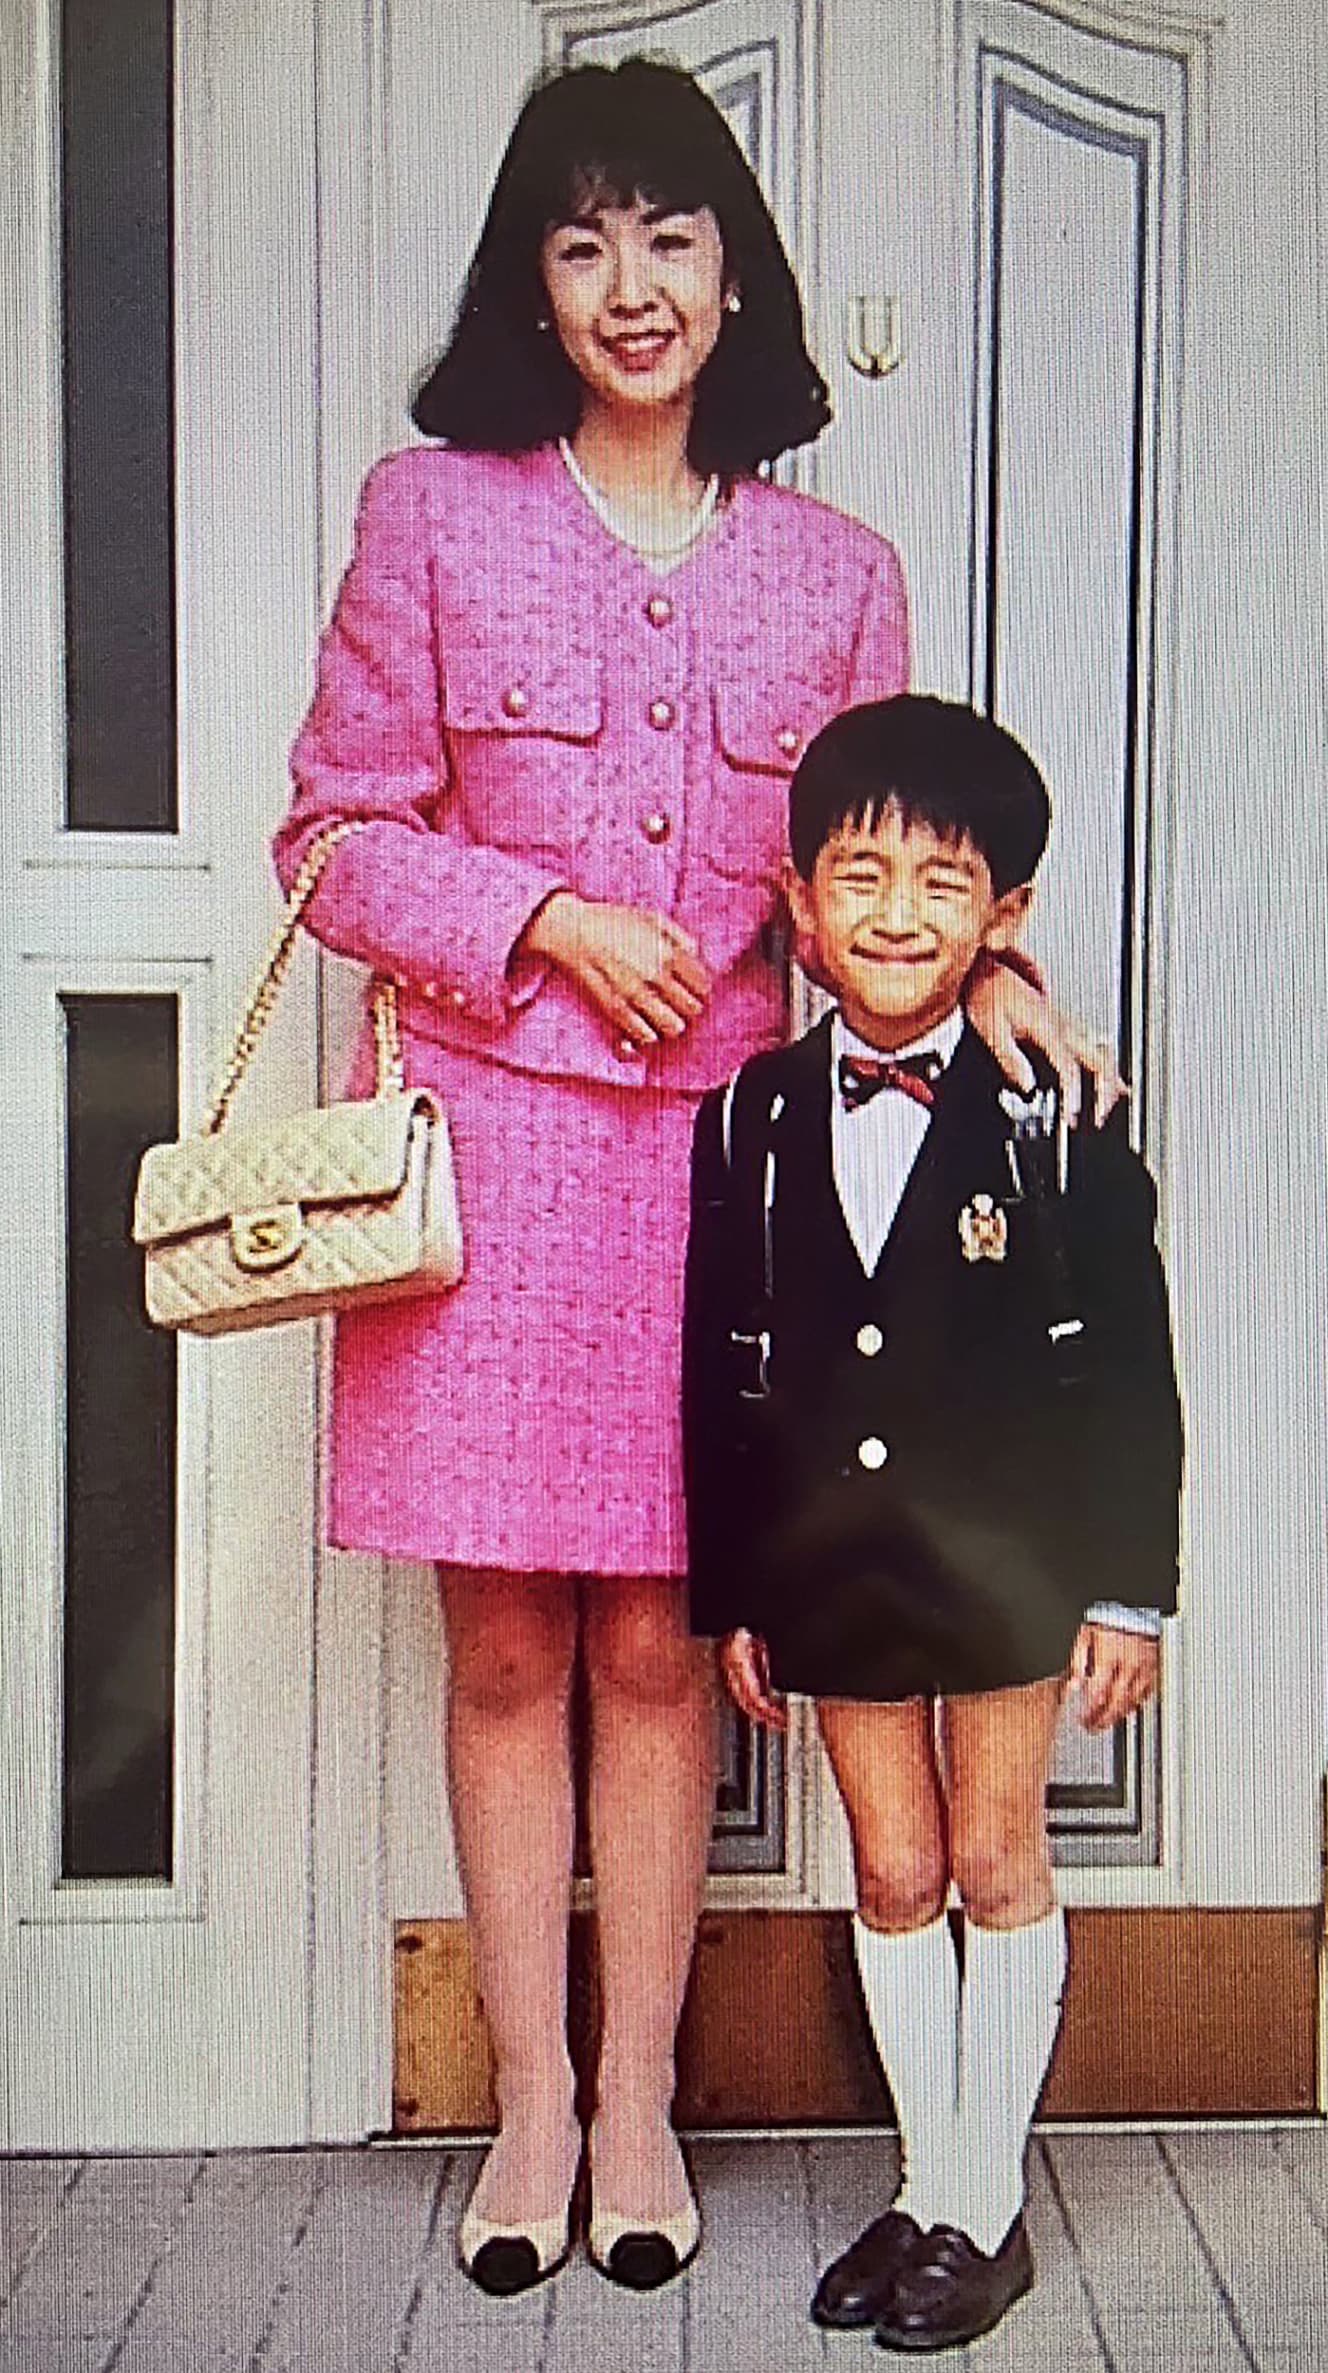 寛人さんが小学校に入学する際の一枚。この写真から６年後、隣に写る博美さんは自宅の風呂場で殺害された